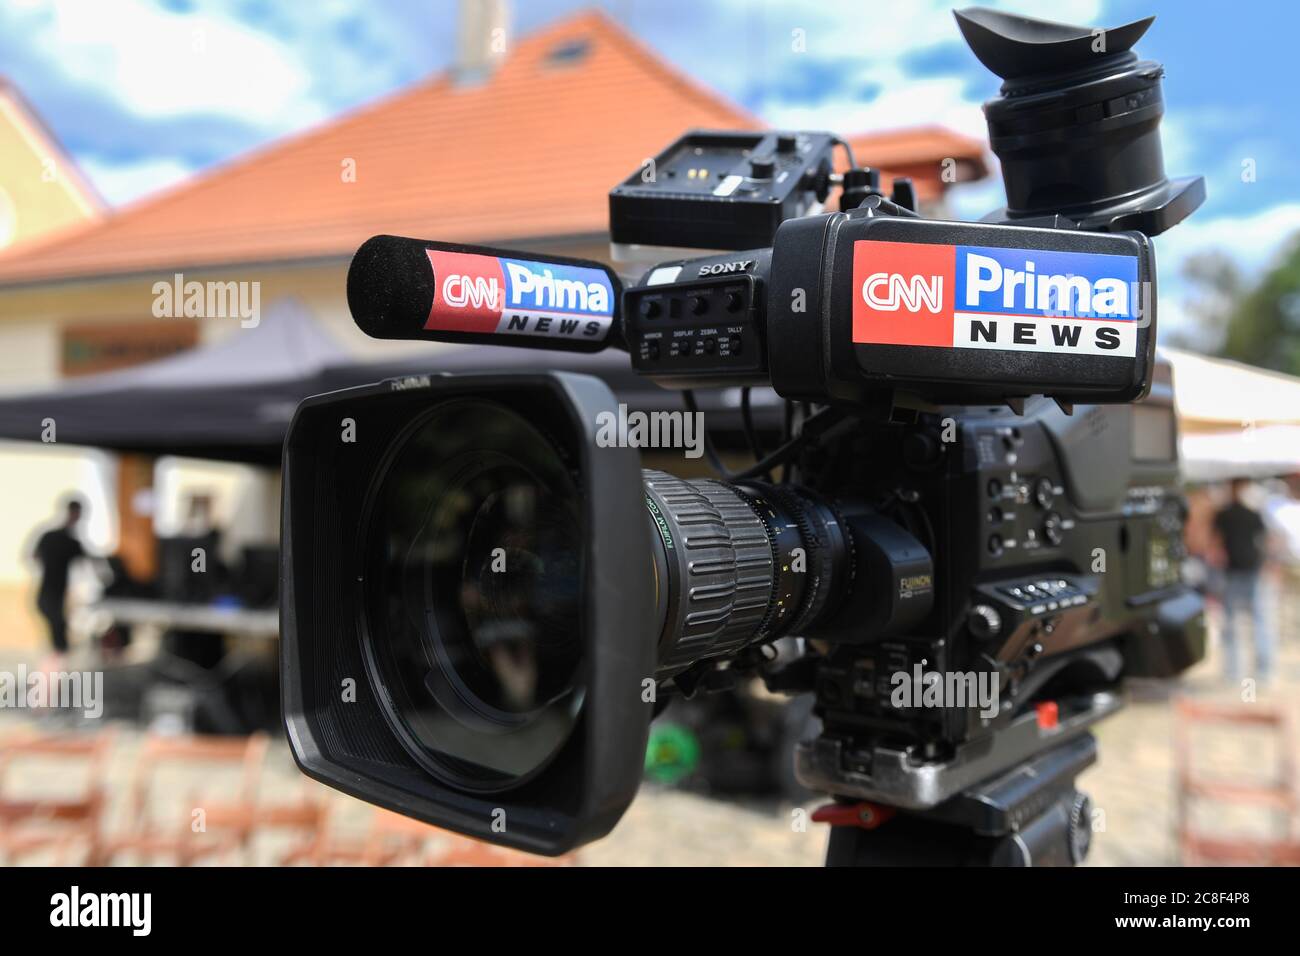 Praga, República Checa. 23 de julio de 2020. Una cámara de vídeo con el  logotipo de la cadena de televisión CNN Prima News se ve durante una  conferencia de prensa sobre el